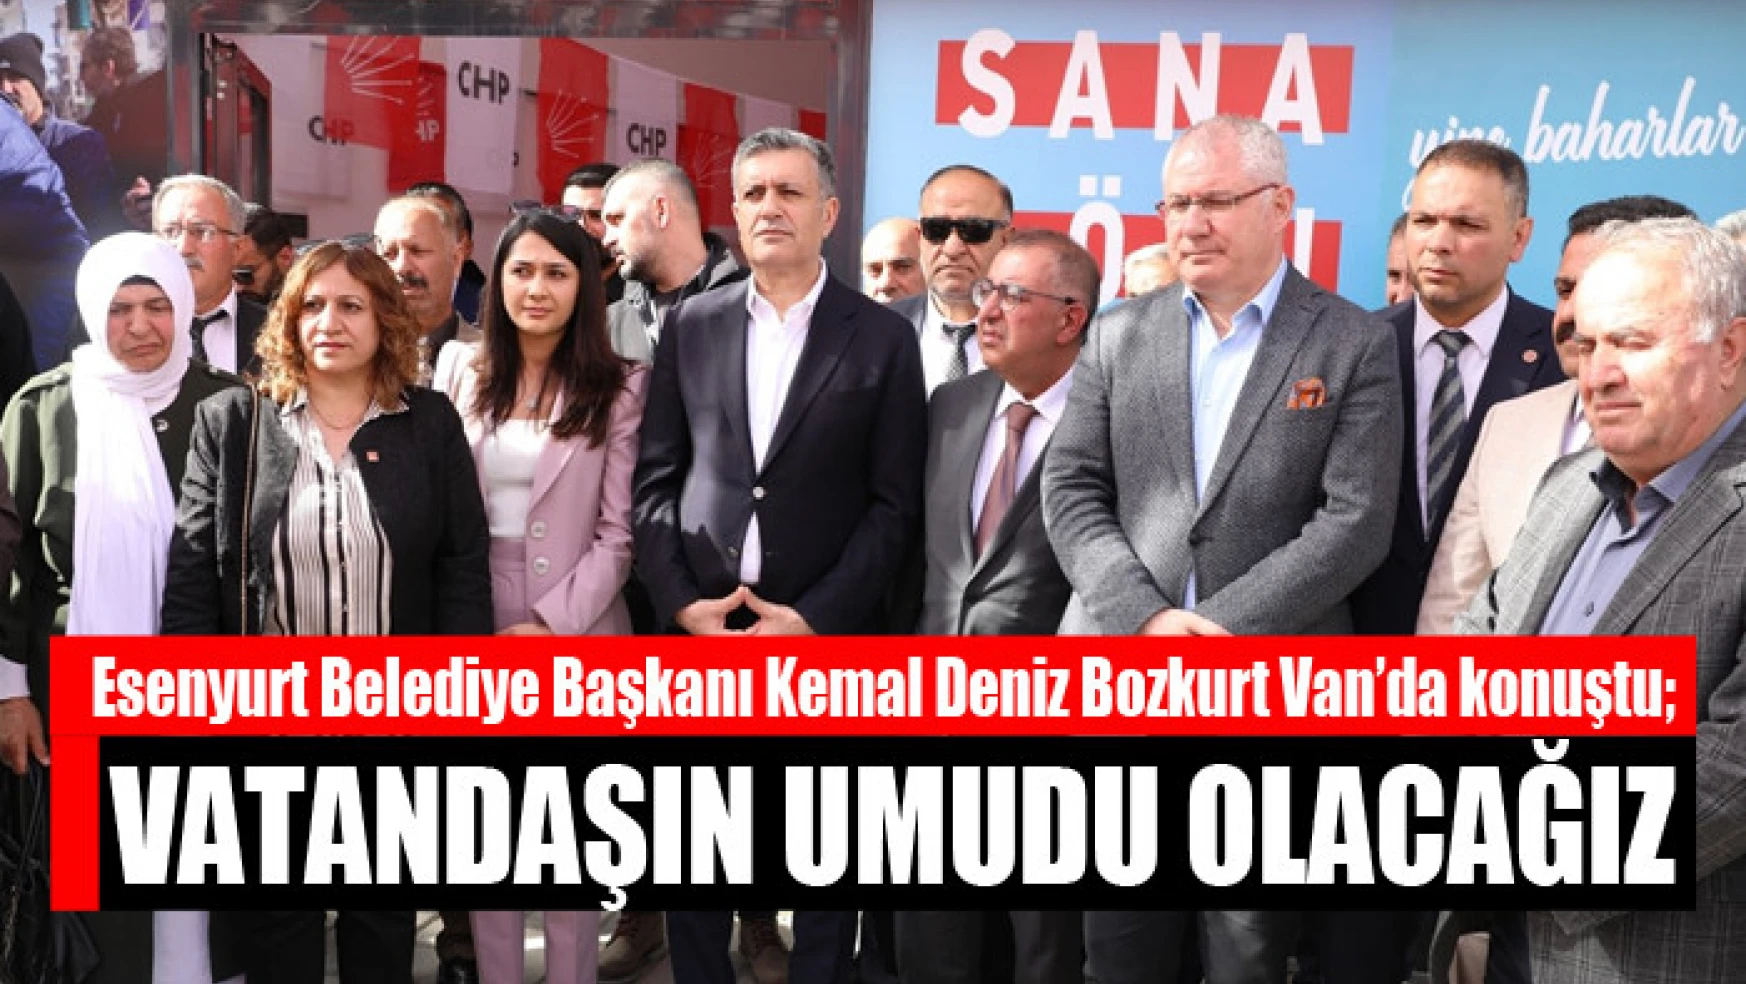 Esenyurt Belediye Başkanı Kemal Deniz Bozkurt Van'da konuştu Vatandaşın umudu olacağız